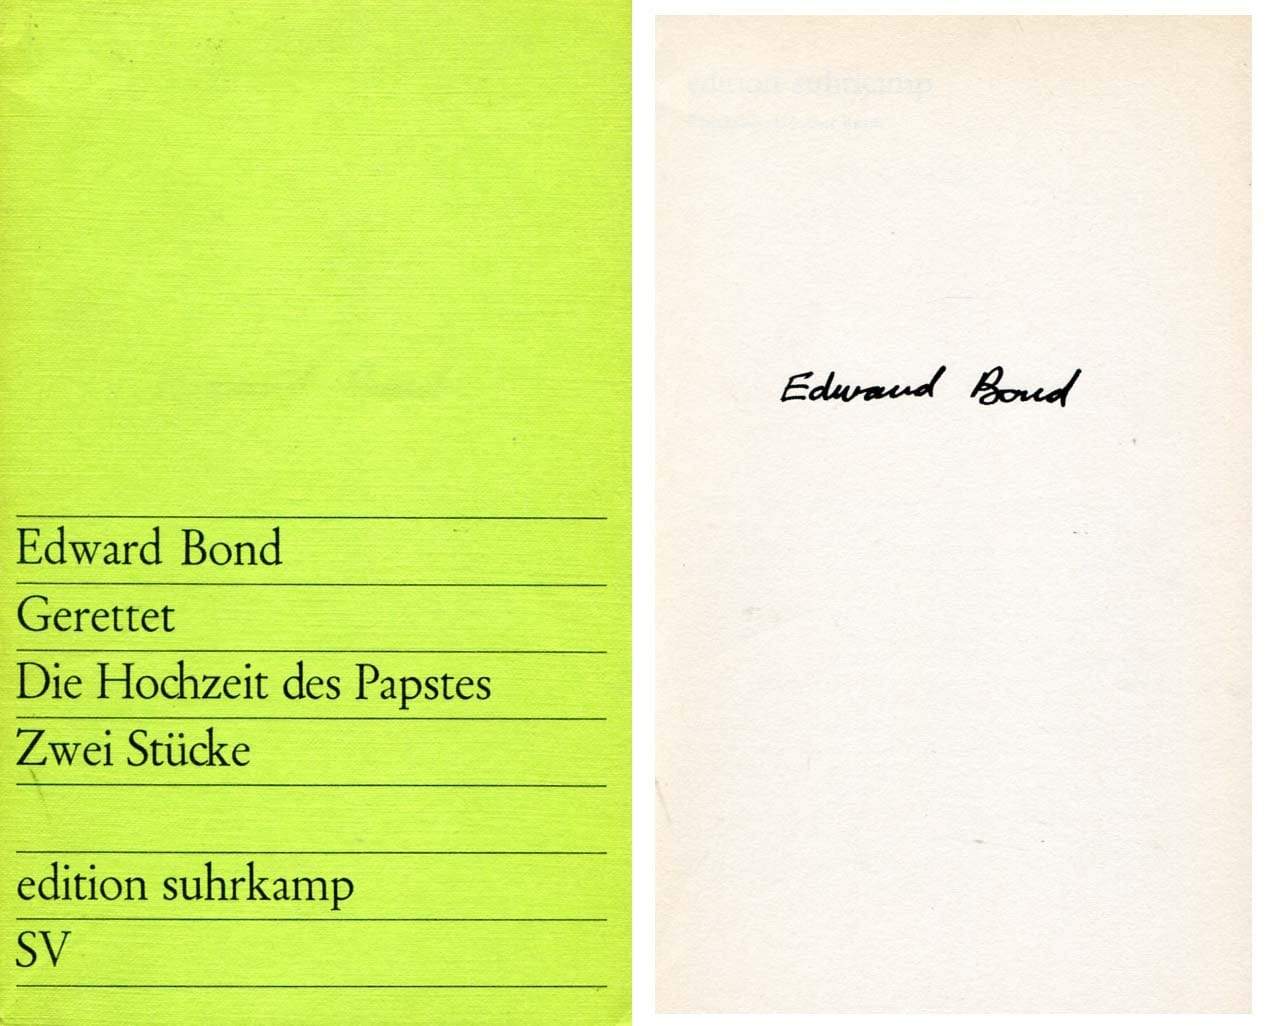 Bond, Edward autograph